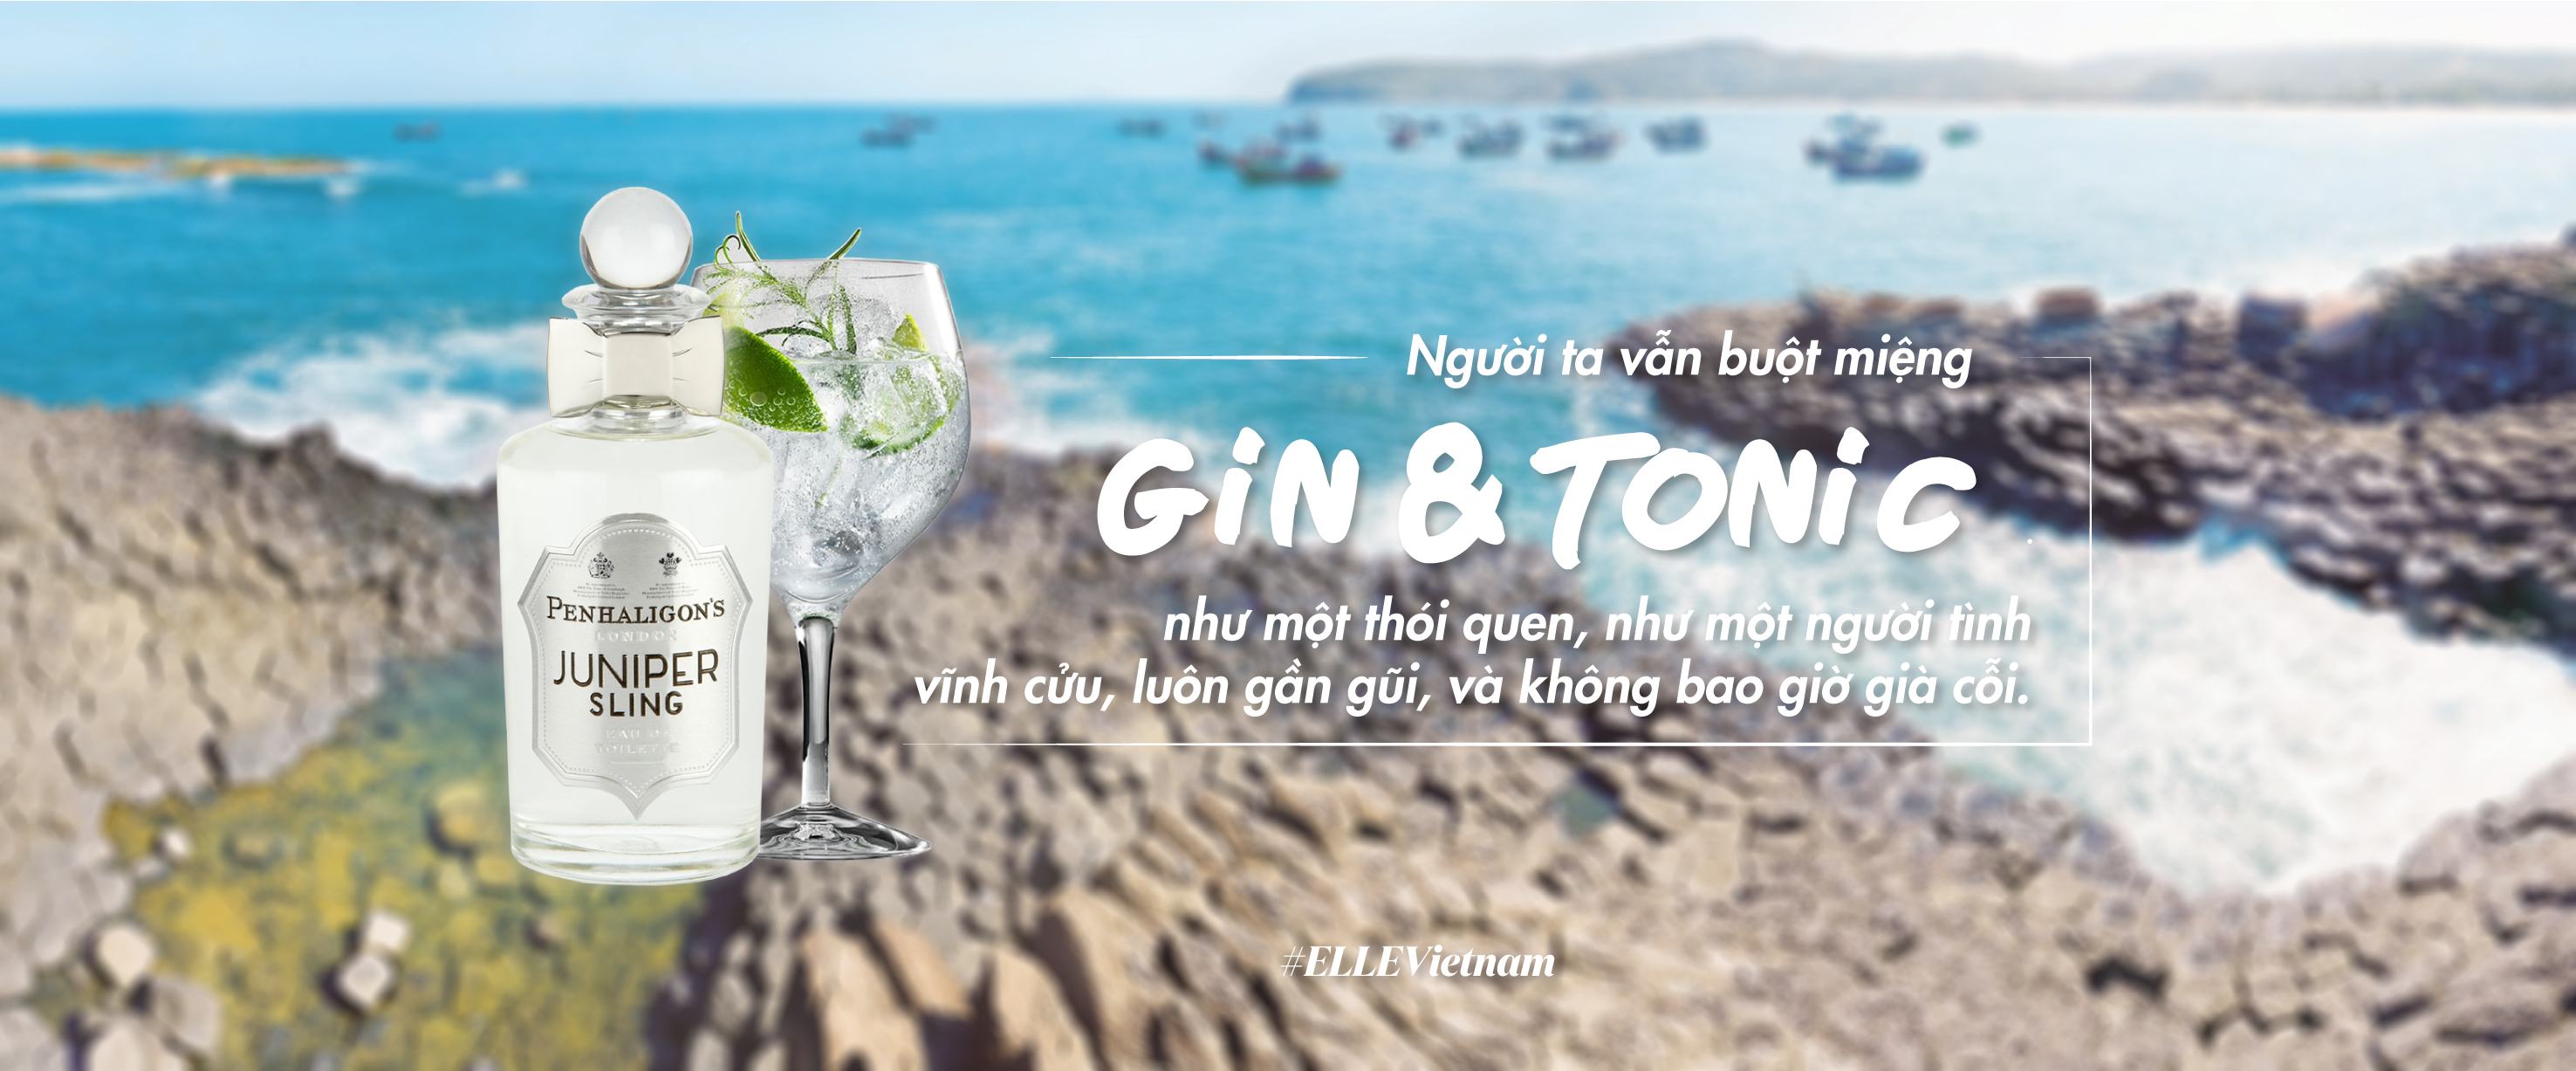 Nước hoa mùa Hè – Nước hoa mang phong vị cocktail bên bờ biển xanh - Làm Đẹp 4